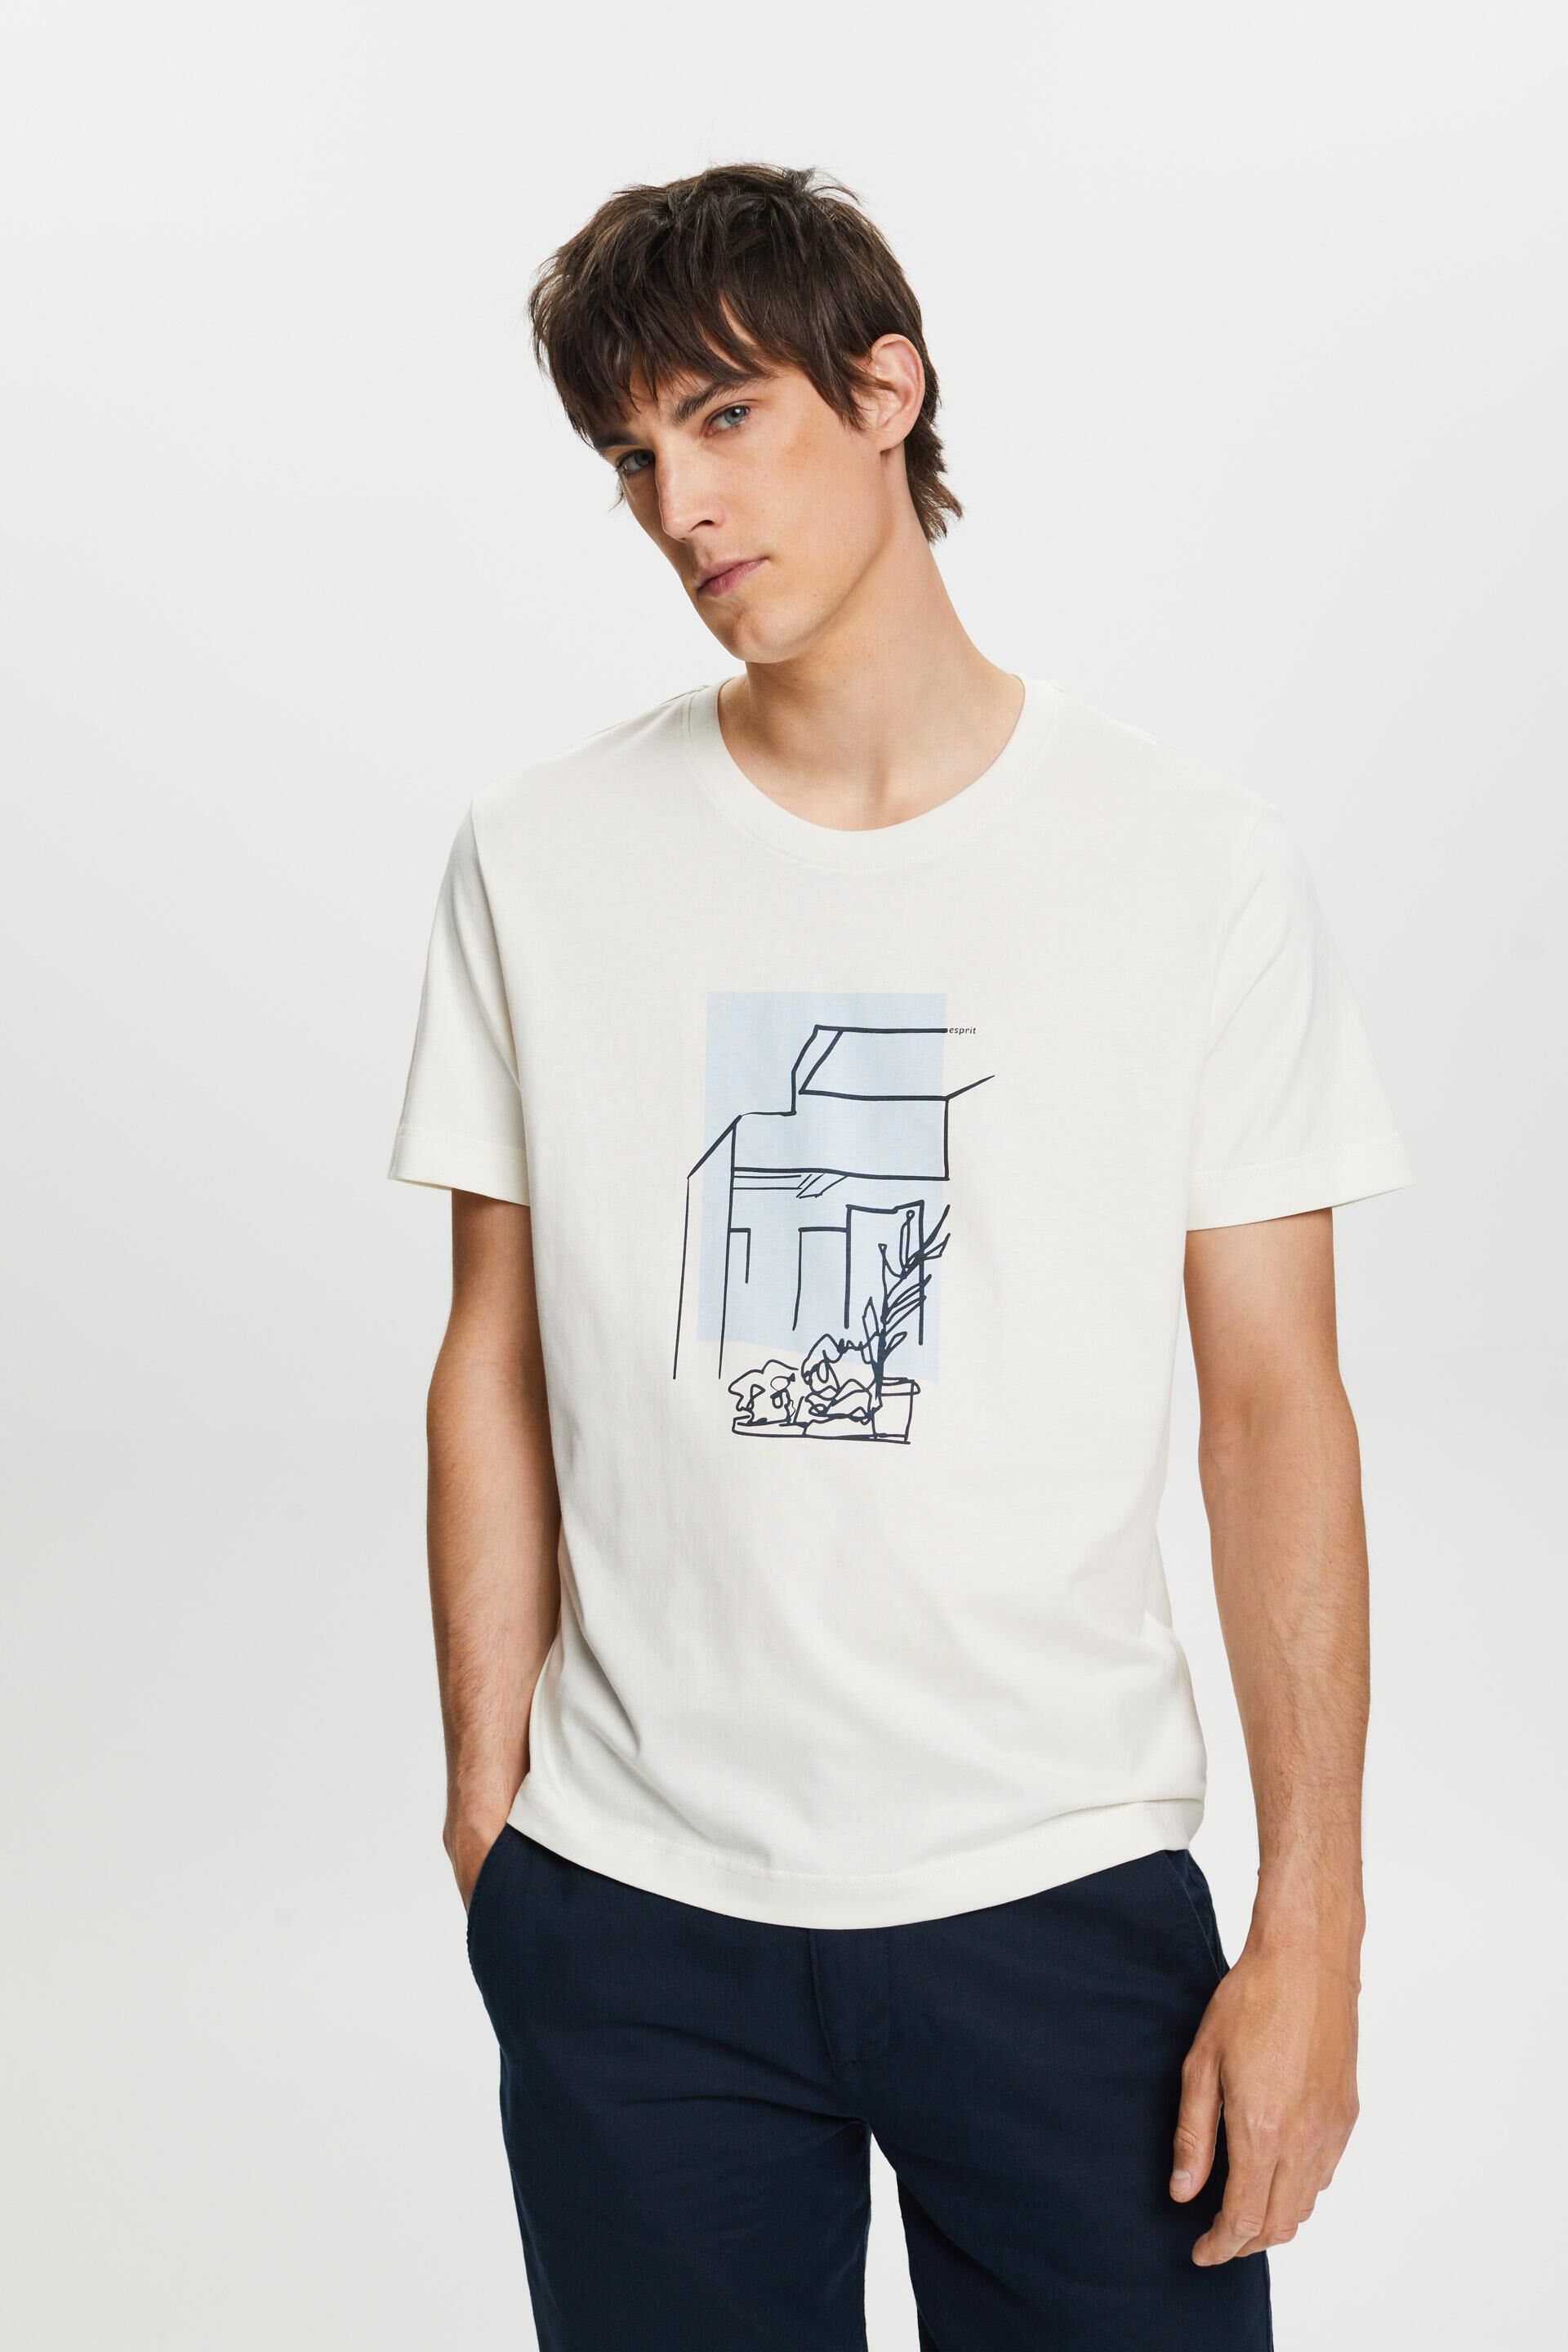 Esprit print, 100% cotton with front T-shirt